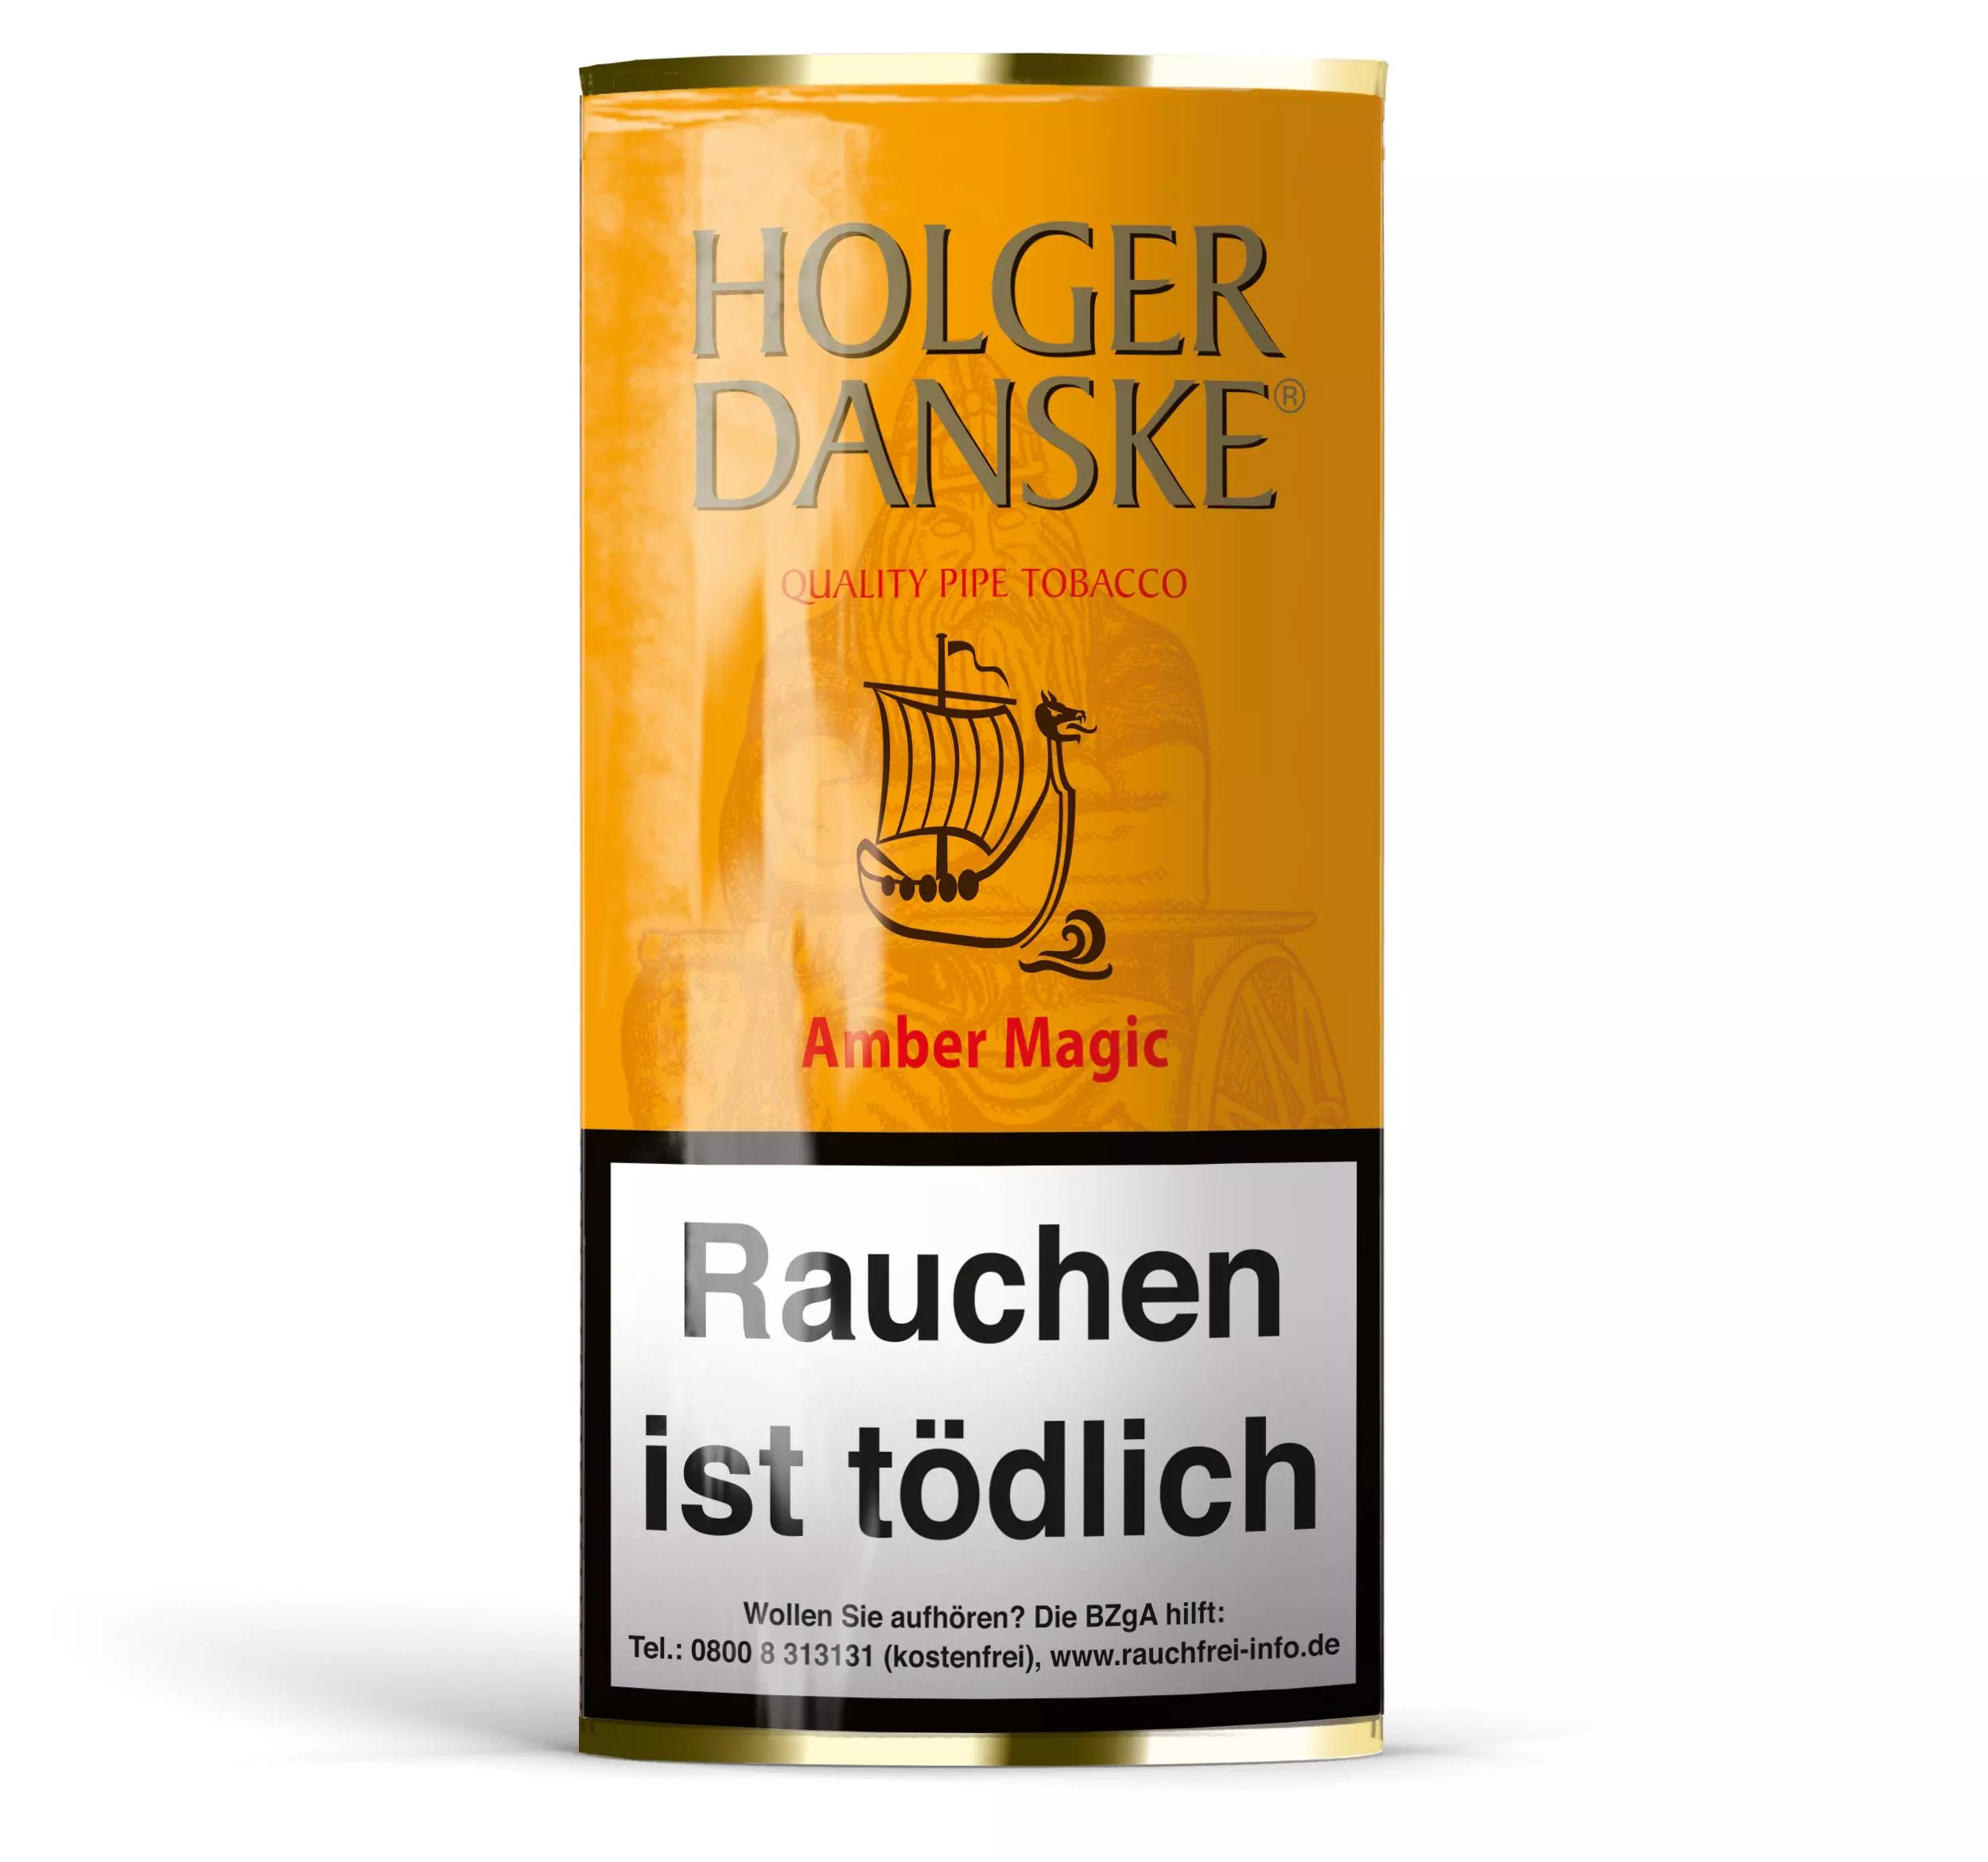 Holger Danske Amber Magic Pfeifentabak 1 x 40g Krüll